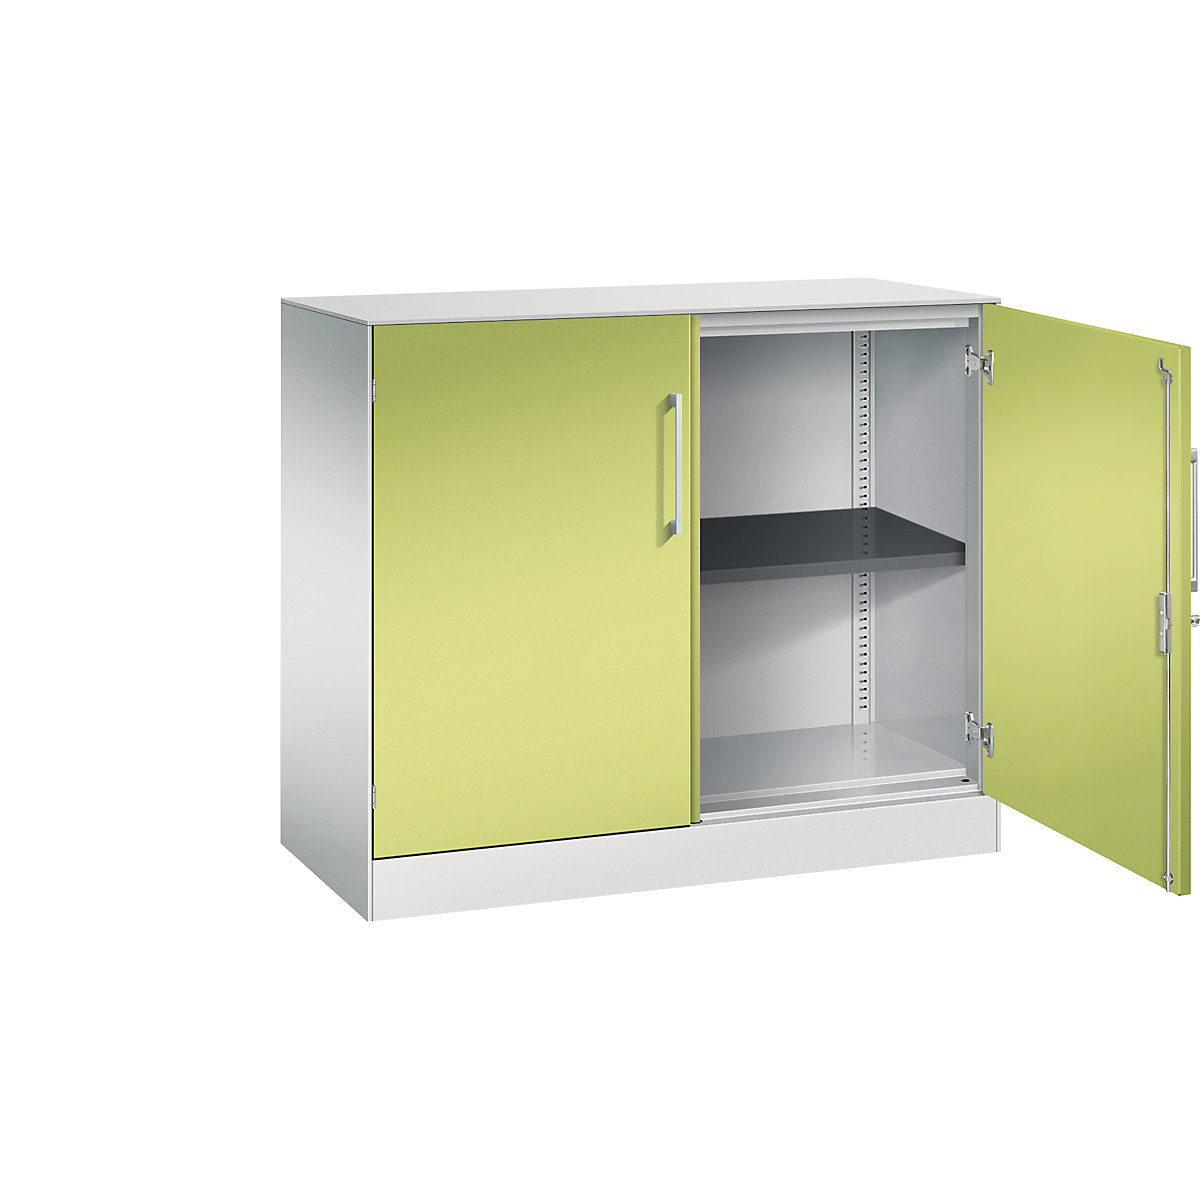 C+P – Skříň s otočnými dveřmi ASISTO, výška 897 mm, šířka 1000 mm, 1 police, světlá šedá/viridianová zelená